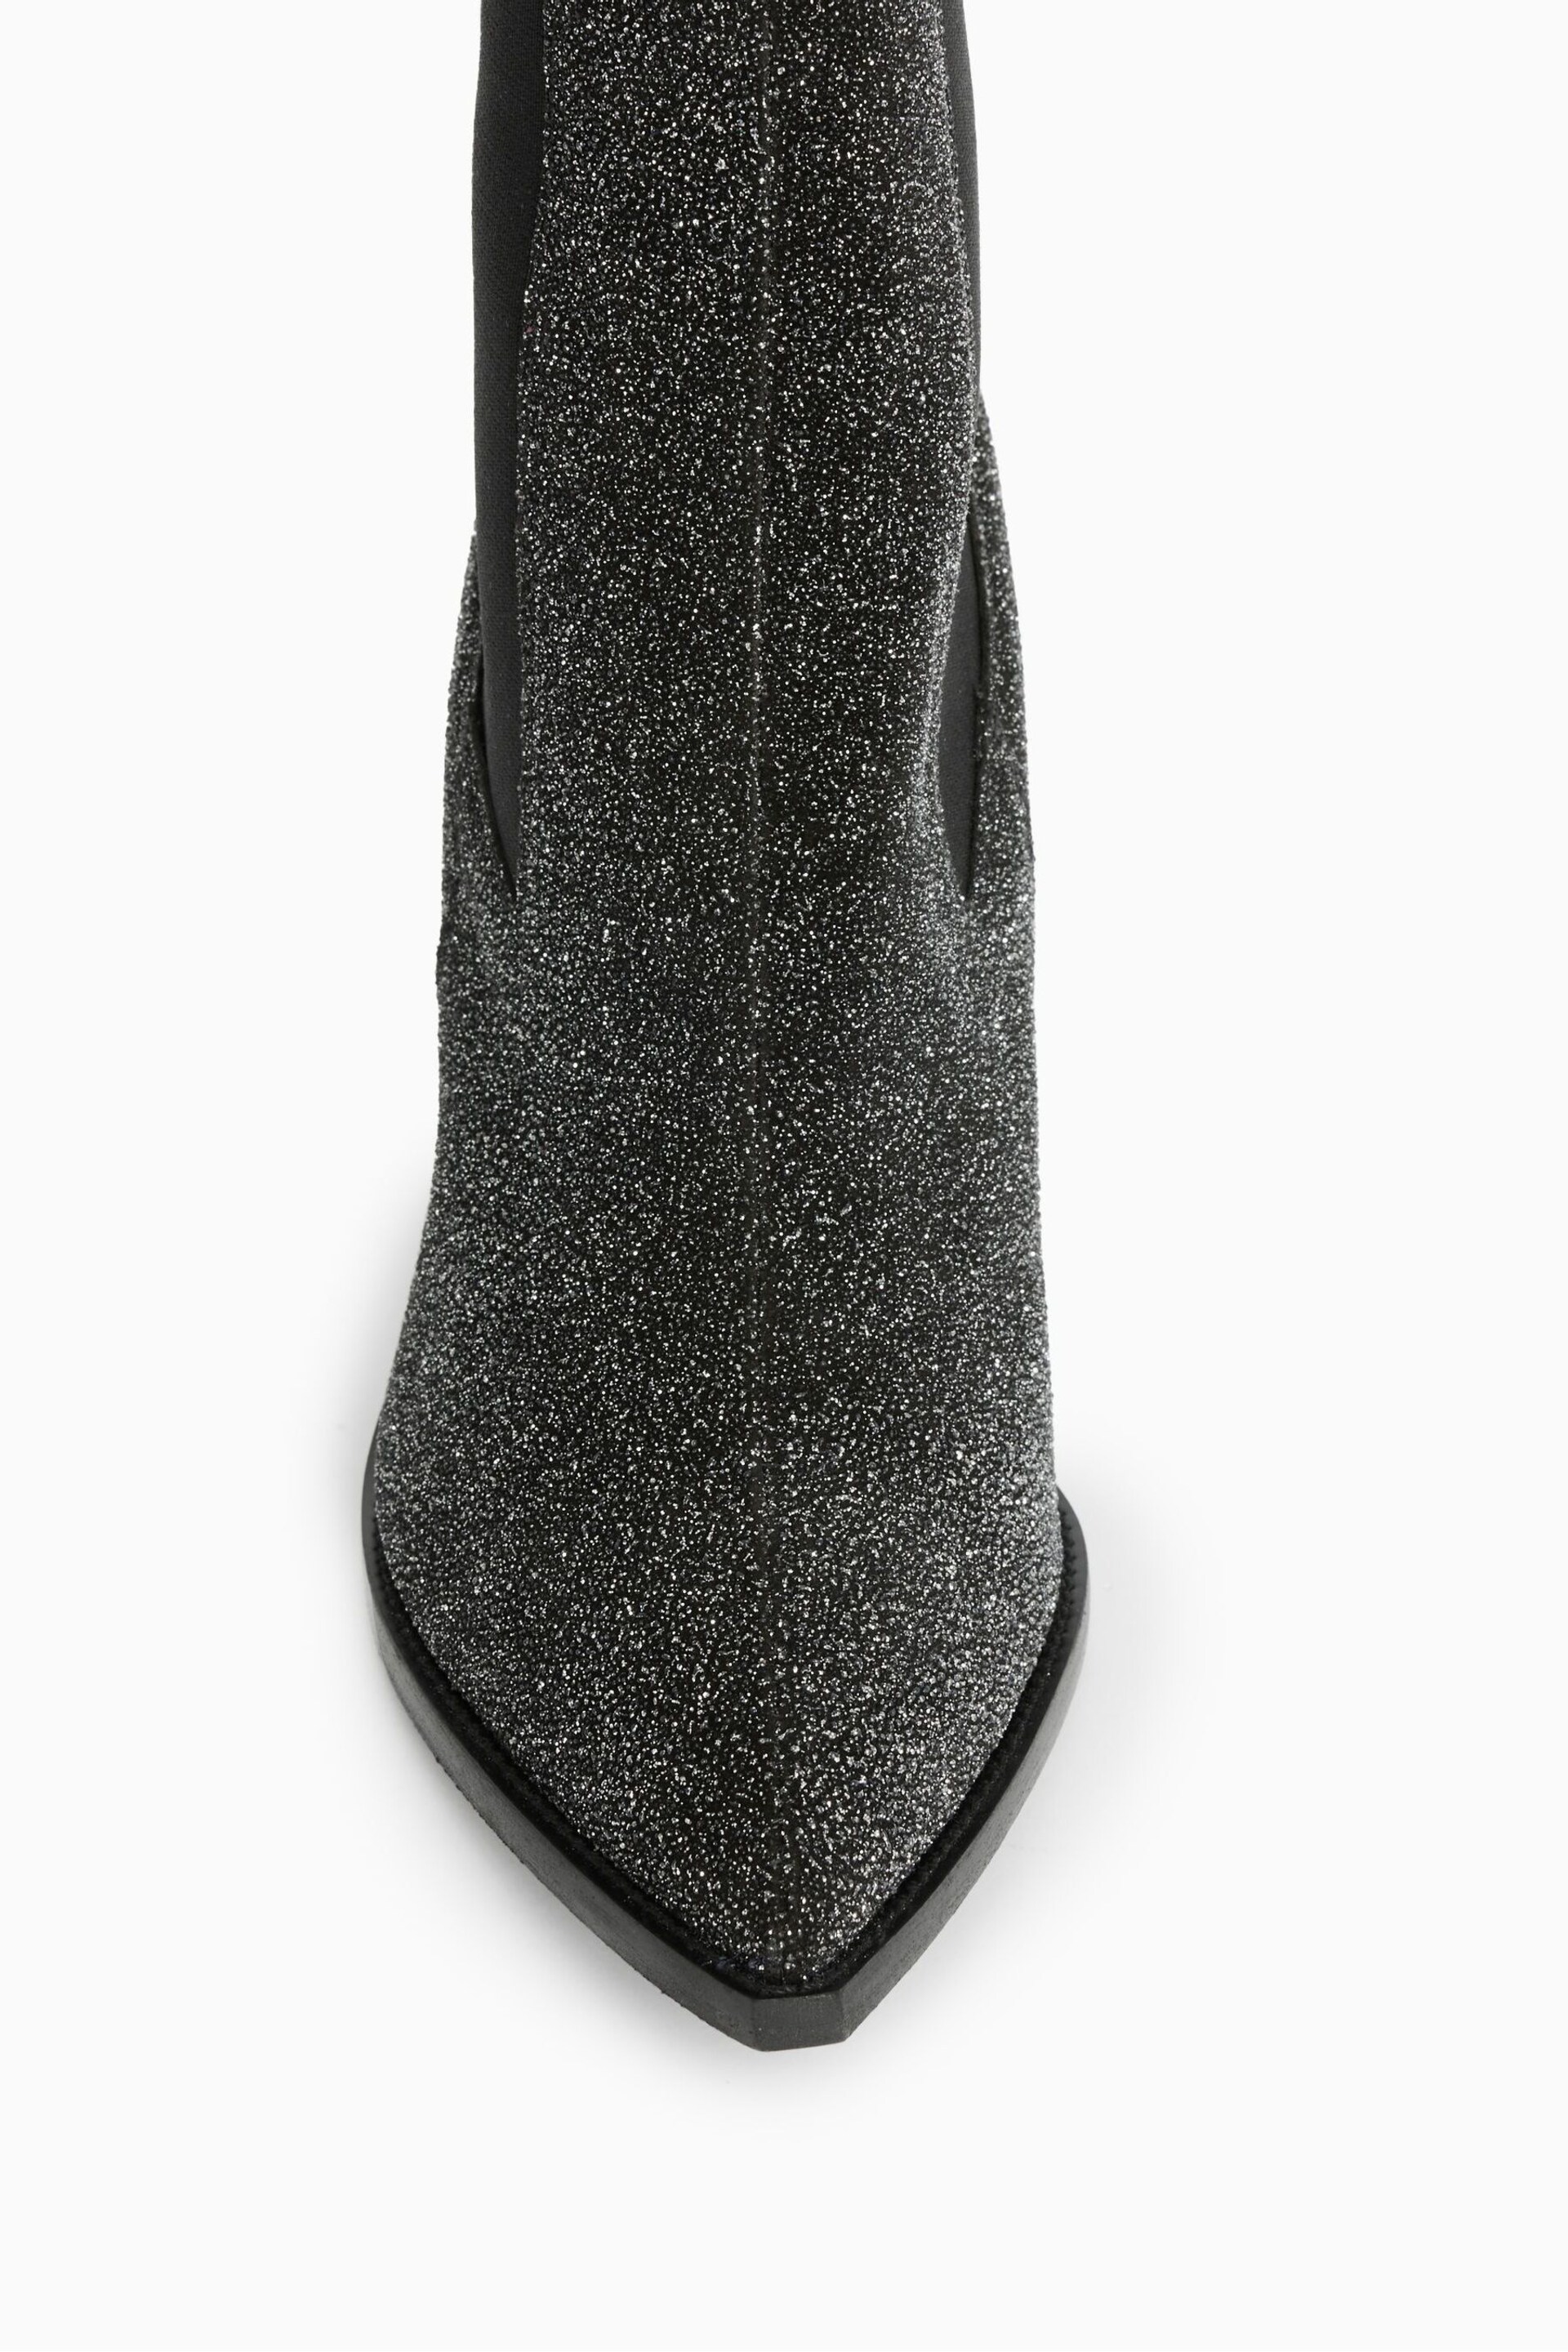 AllSaints Black Sparkle Ria Boots - Image 4 of 7